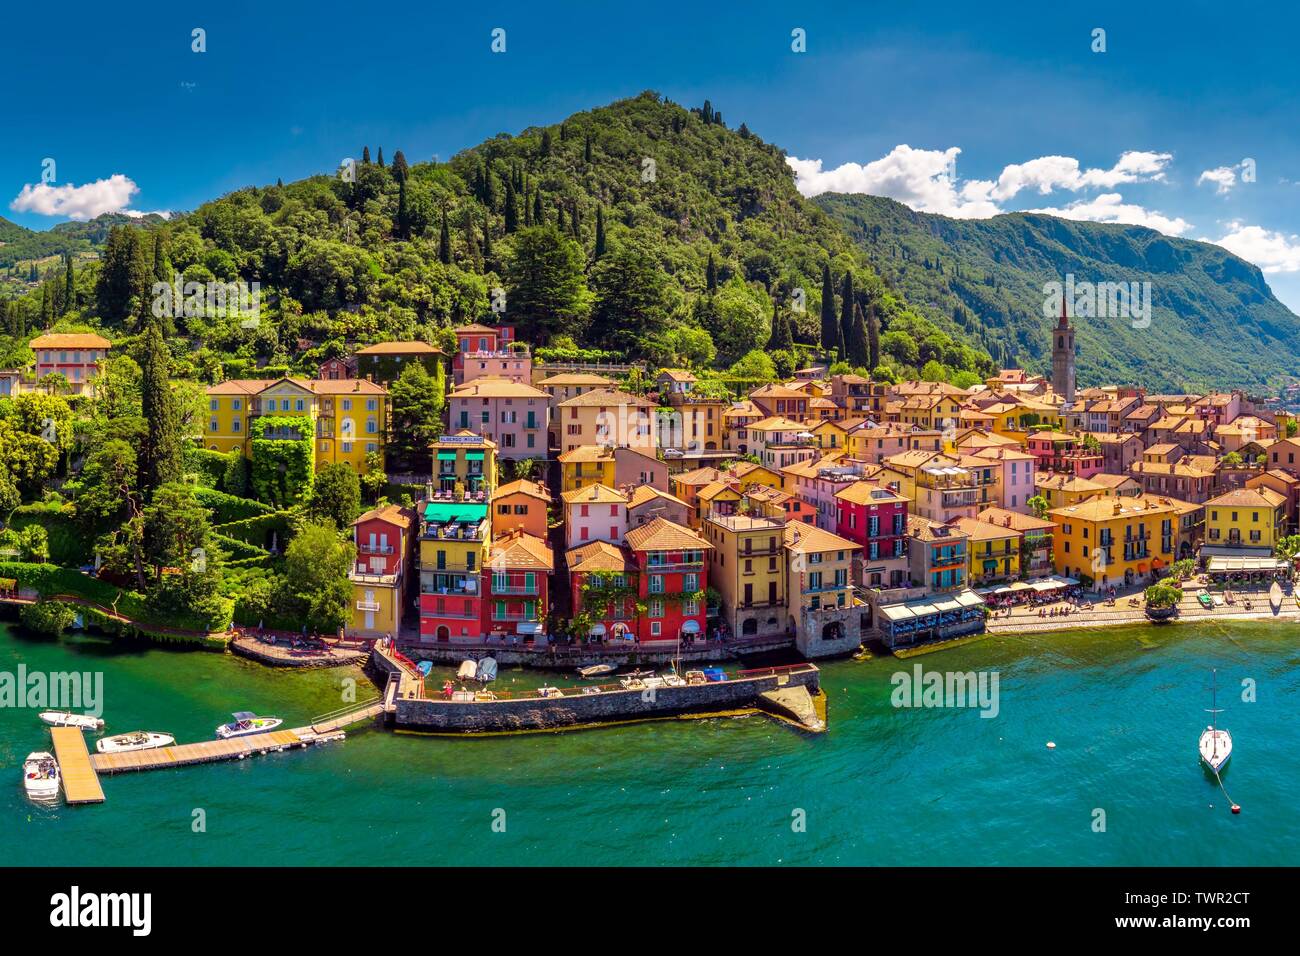 Vista aerea di Varena vecchia città sul lago di Como con le montagne sullo sfondo, l'Italia, l'Europa. Foto Stock